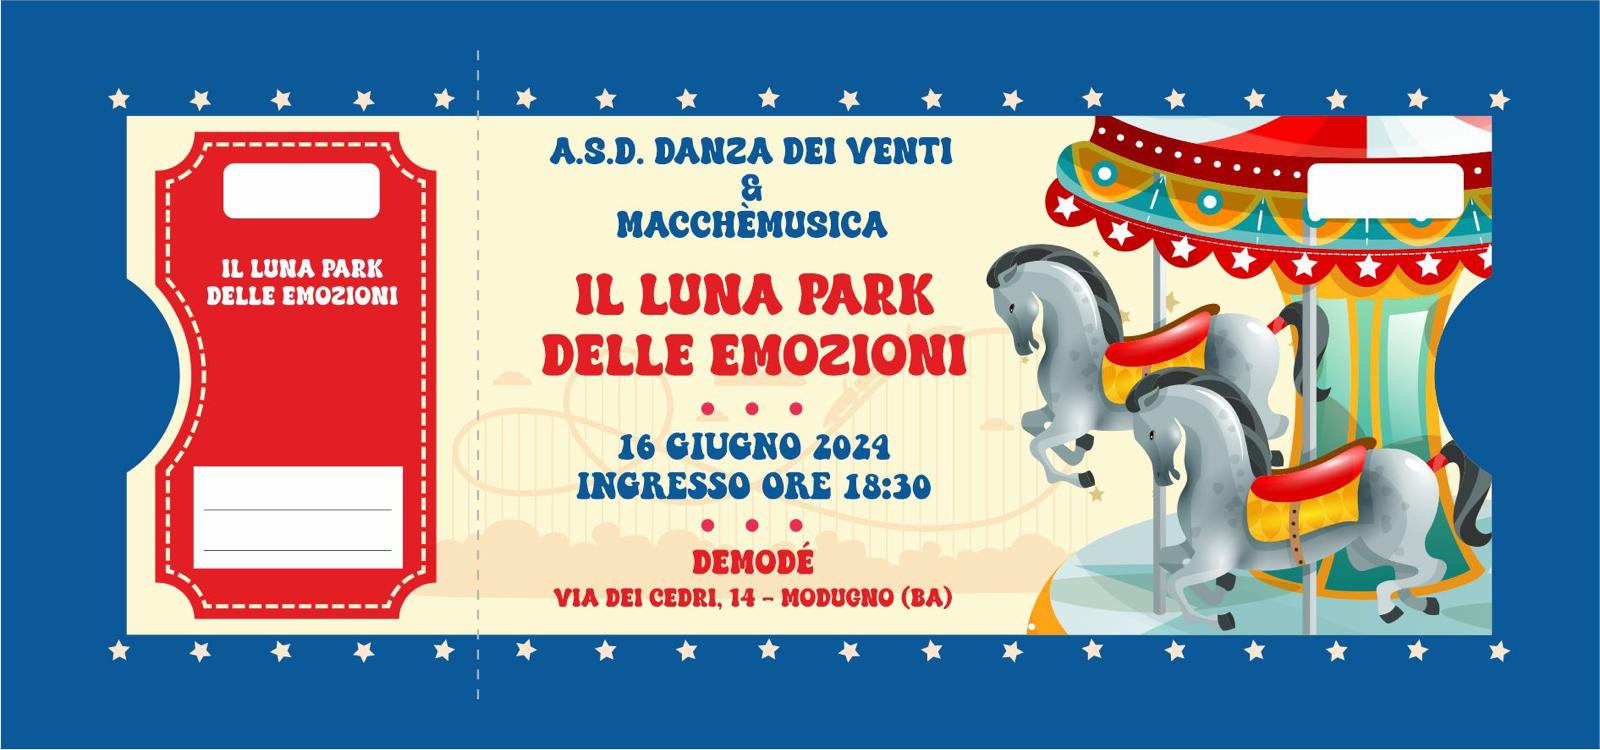 Al Demodé il “Luna Park delle emozioni” della Danza dei venti